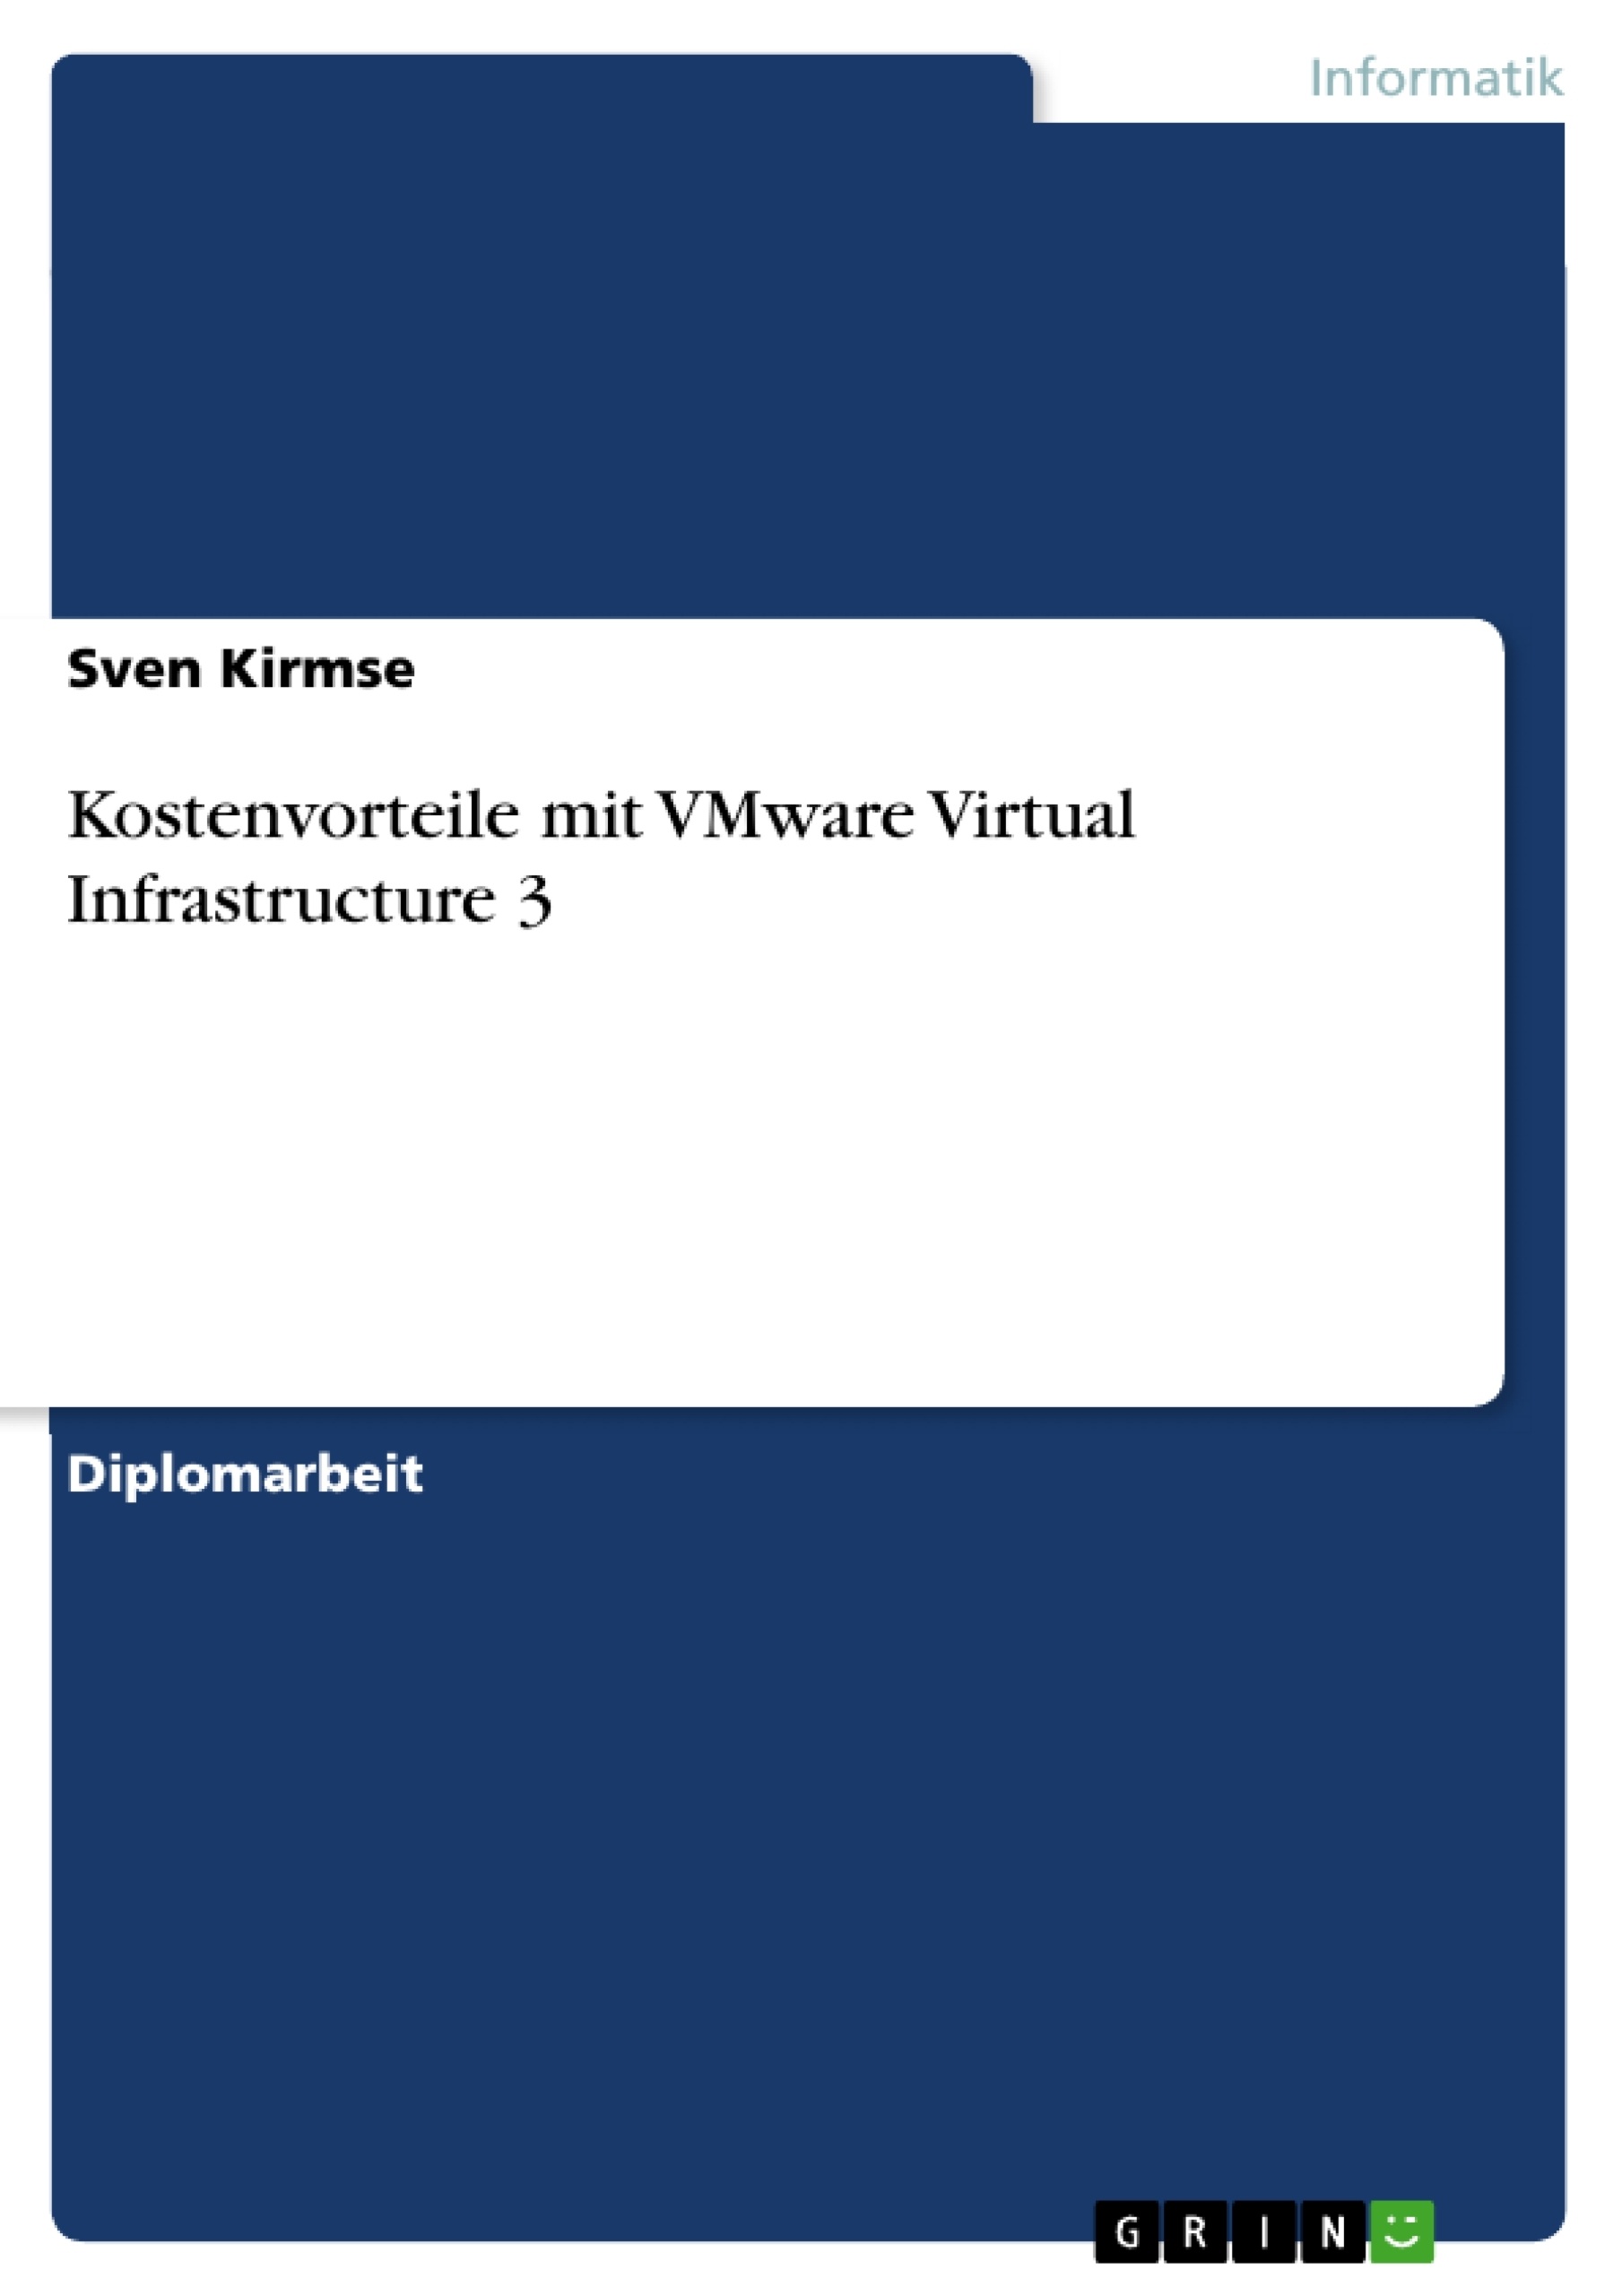 Título: Kostenvorteile mit VMware Virtual Infrastructure 3